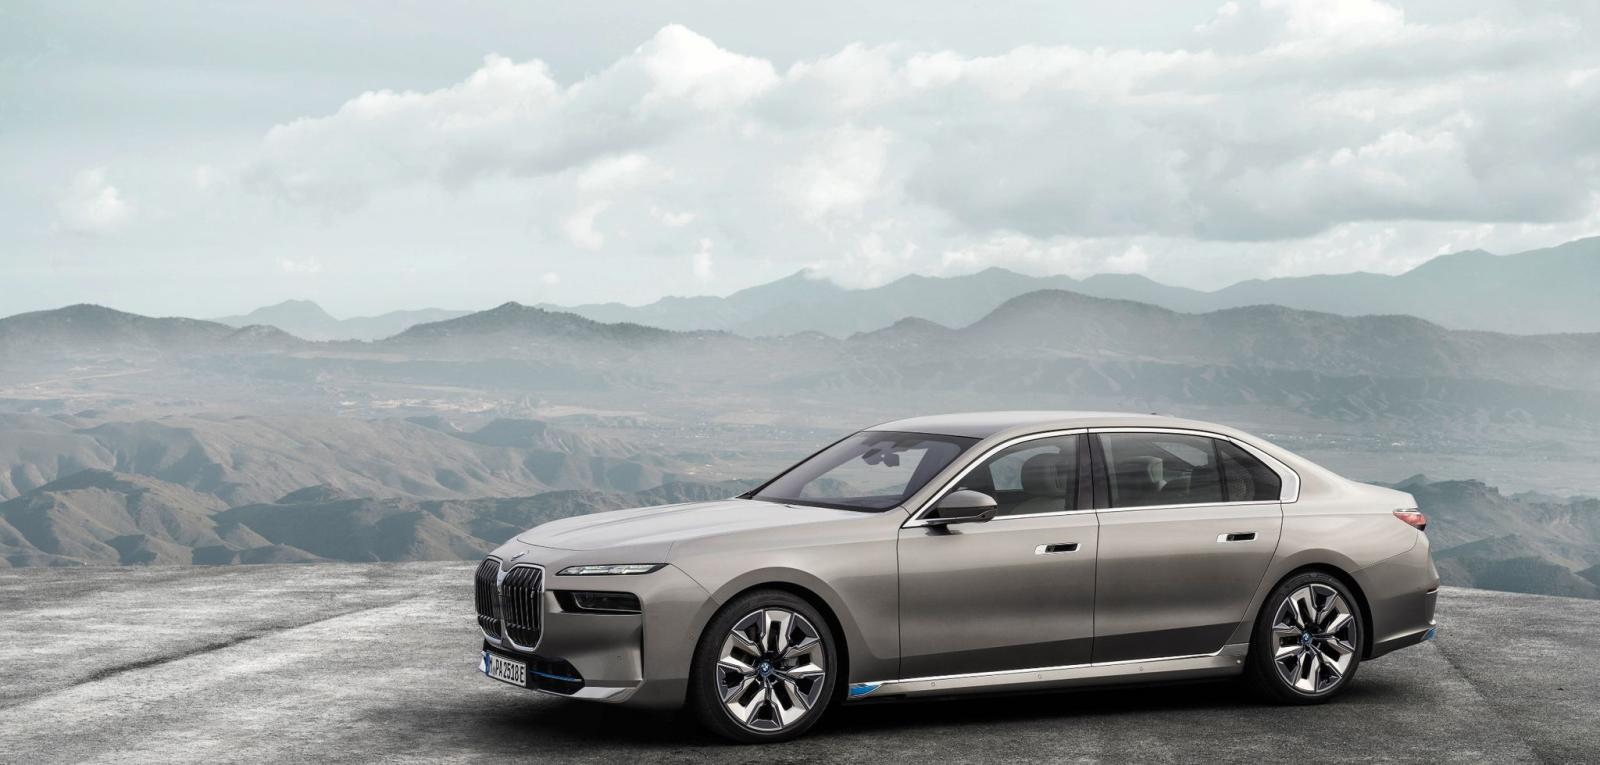 BMW 7-serien for syvende gang – og nu også helt elektrisk